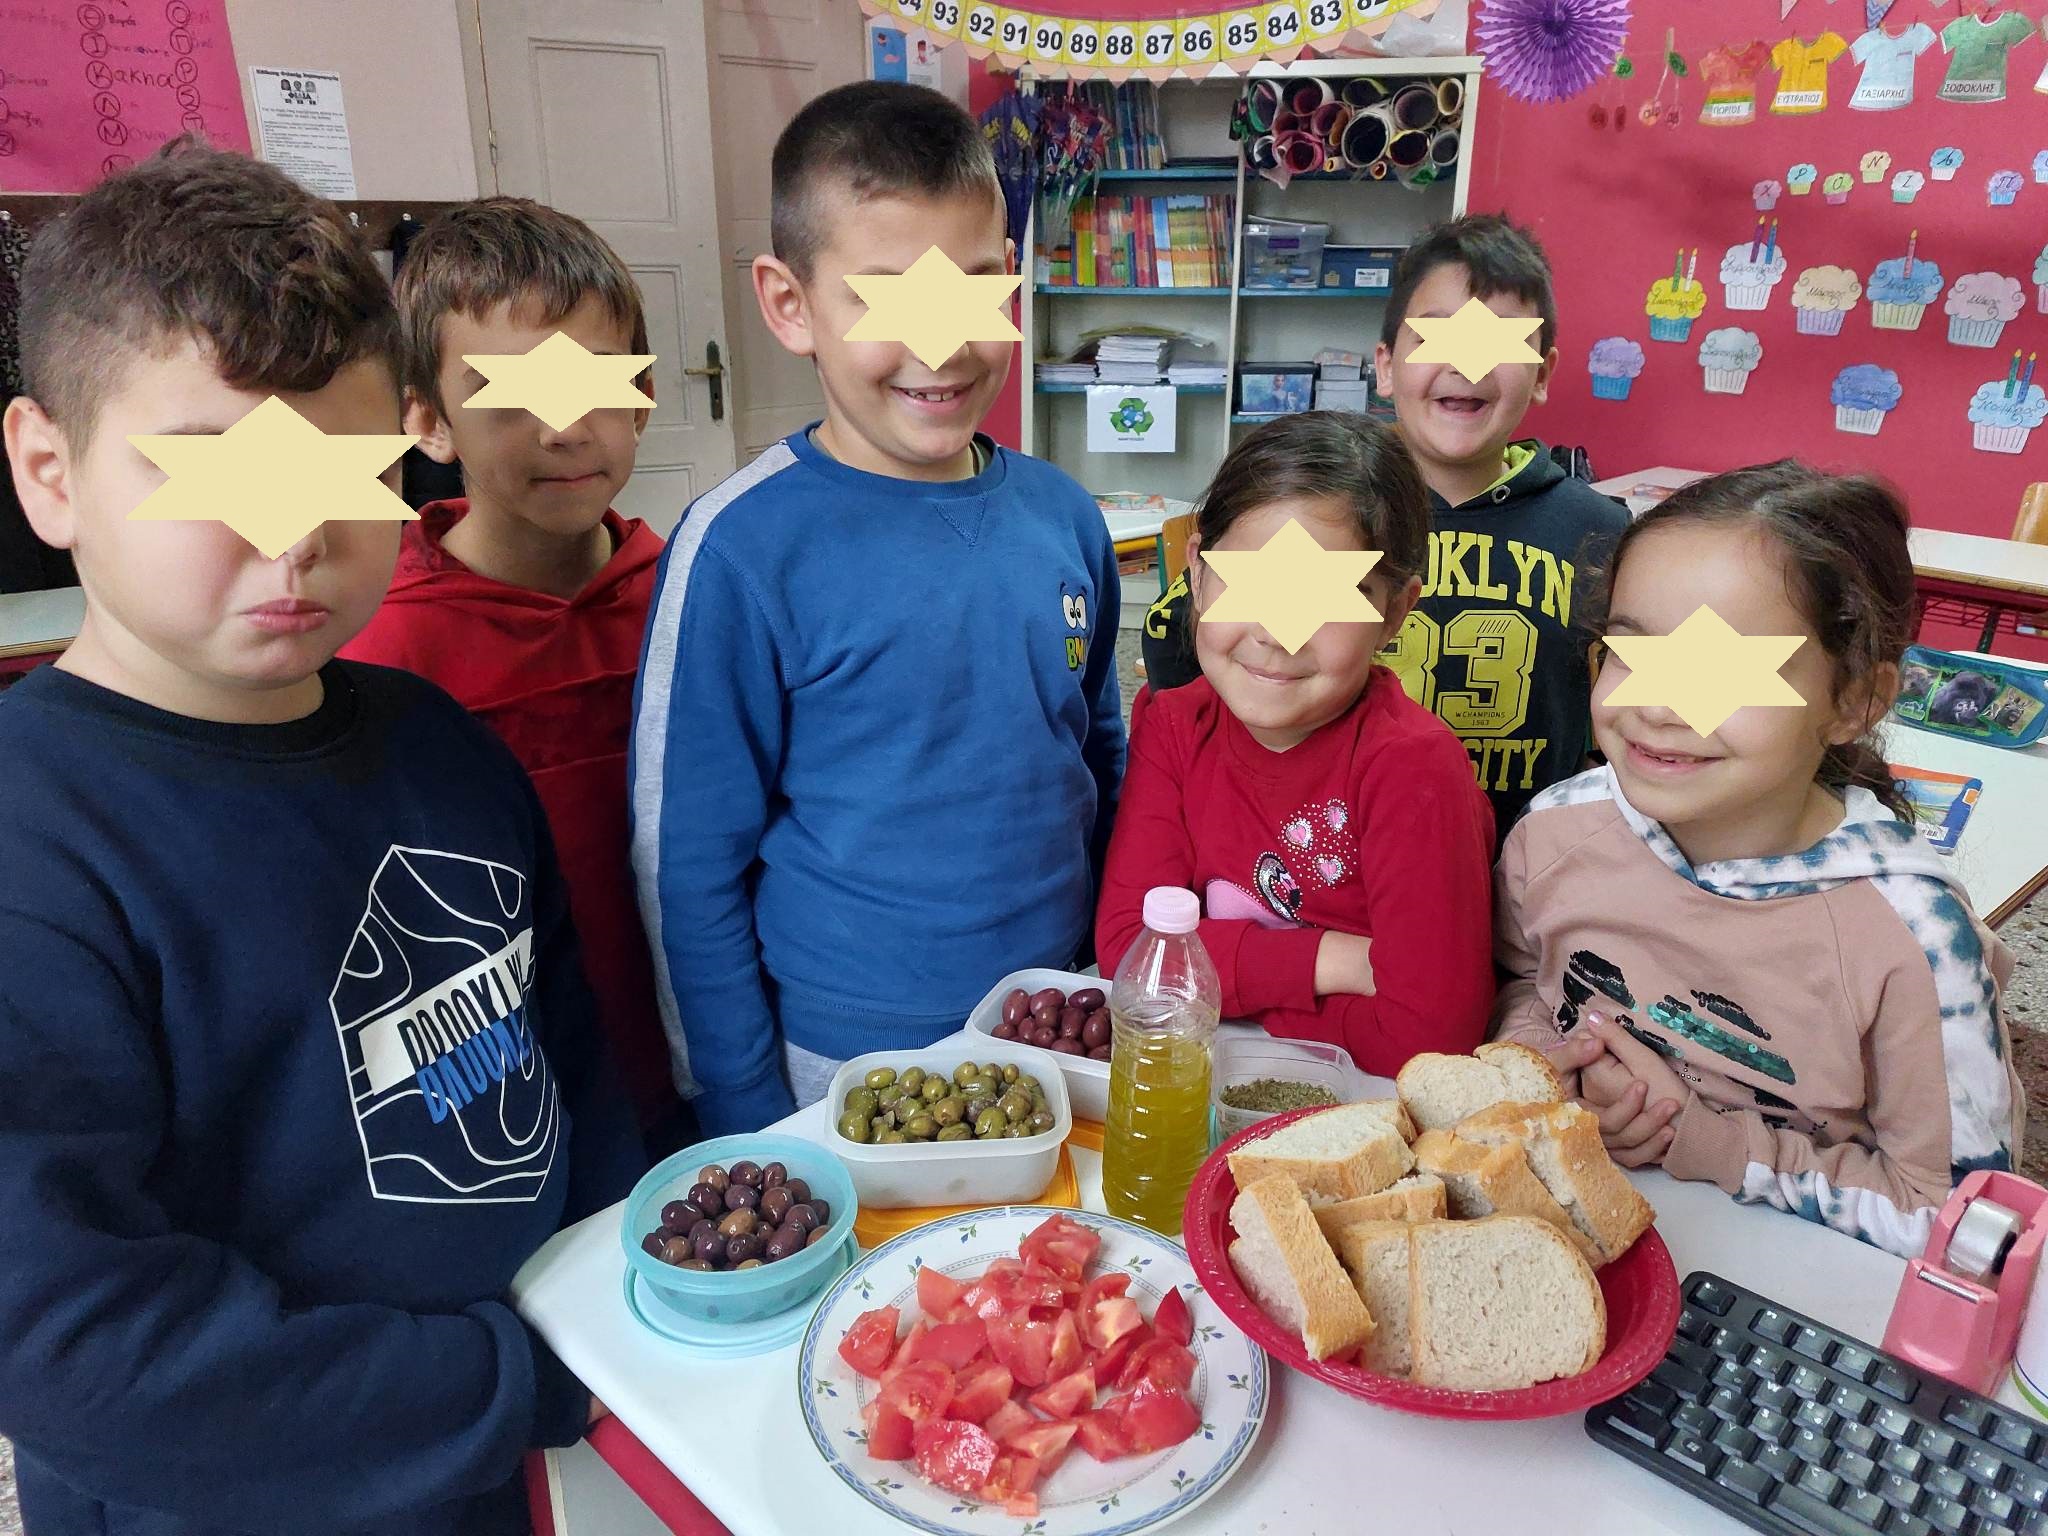 Μυτιληνιό πρωϊνό με ελιές και φρέσκο ψωμί στο Δημοτικό σχολείο Κάτω Τρίτους